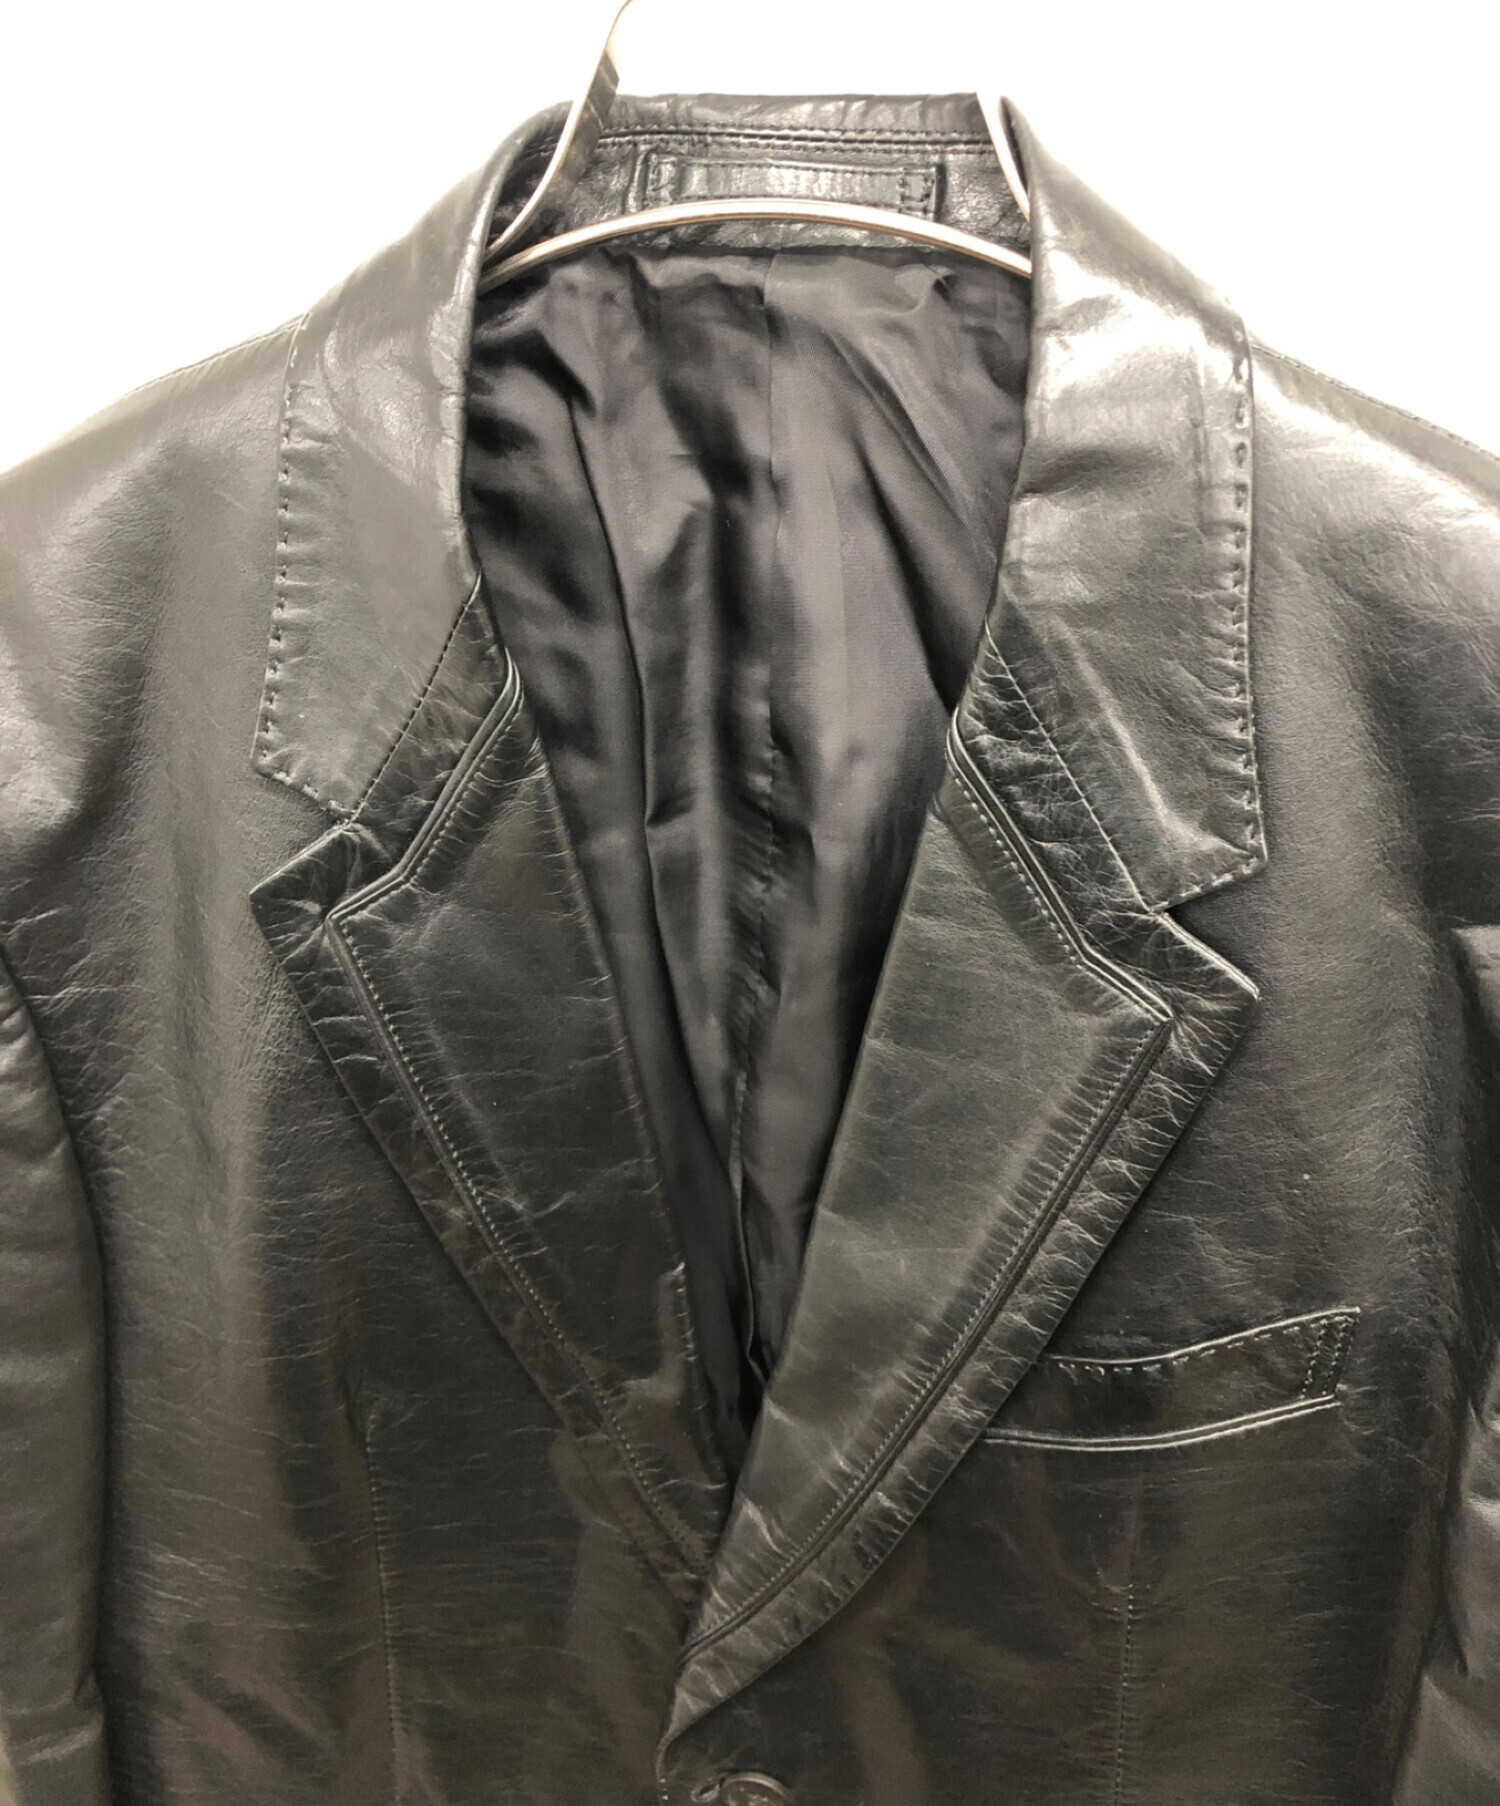 Paul Smith COLLECTION (ポールスミス コレクション) レザージャケット ブラック サイズ:XL